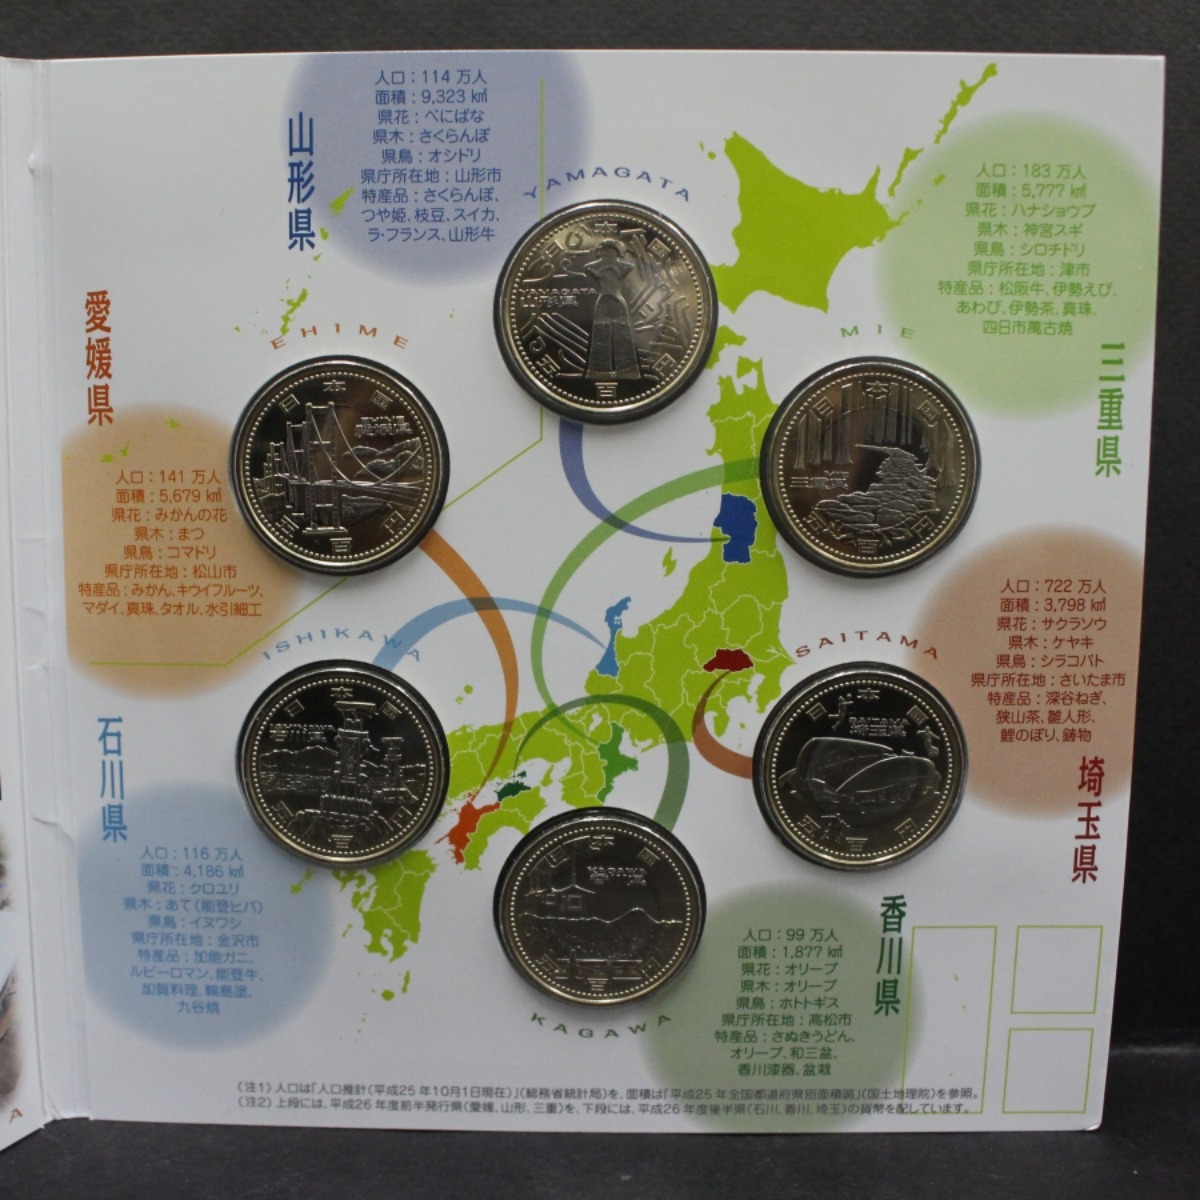 일본 2014년 (평성 26년) 지방 자치 60주년 (일본지방자치법) 500엔 기념 주화 6종 민트첩